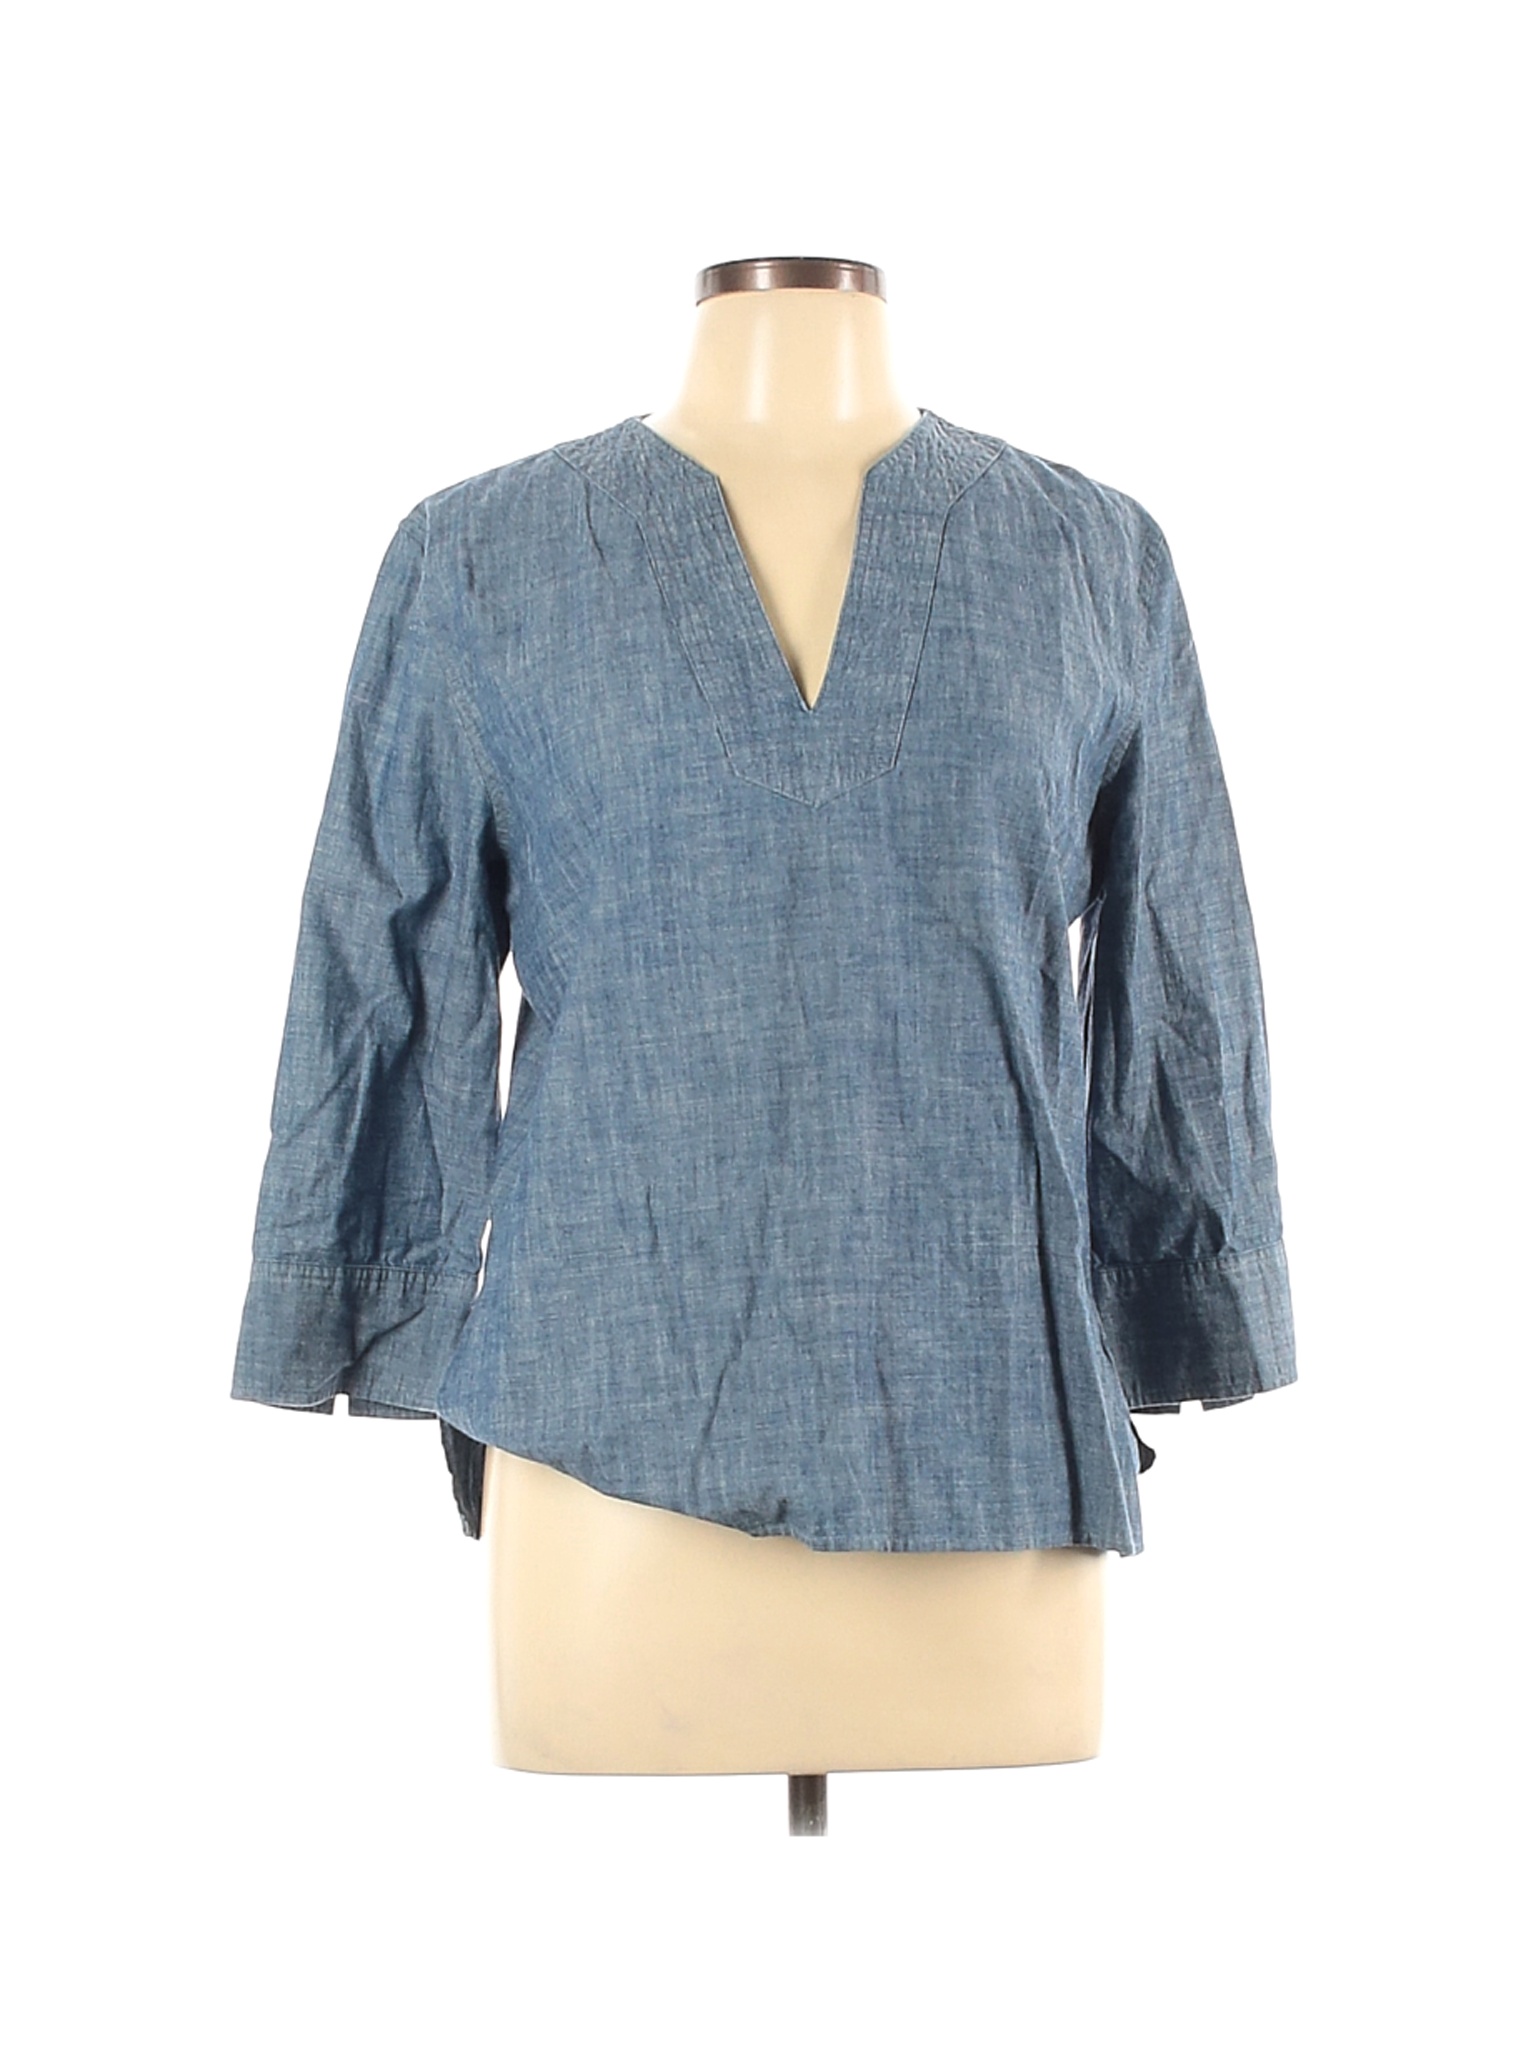 Gap Women Blue 3/4 Sleeve Blouse L | eBay